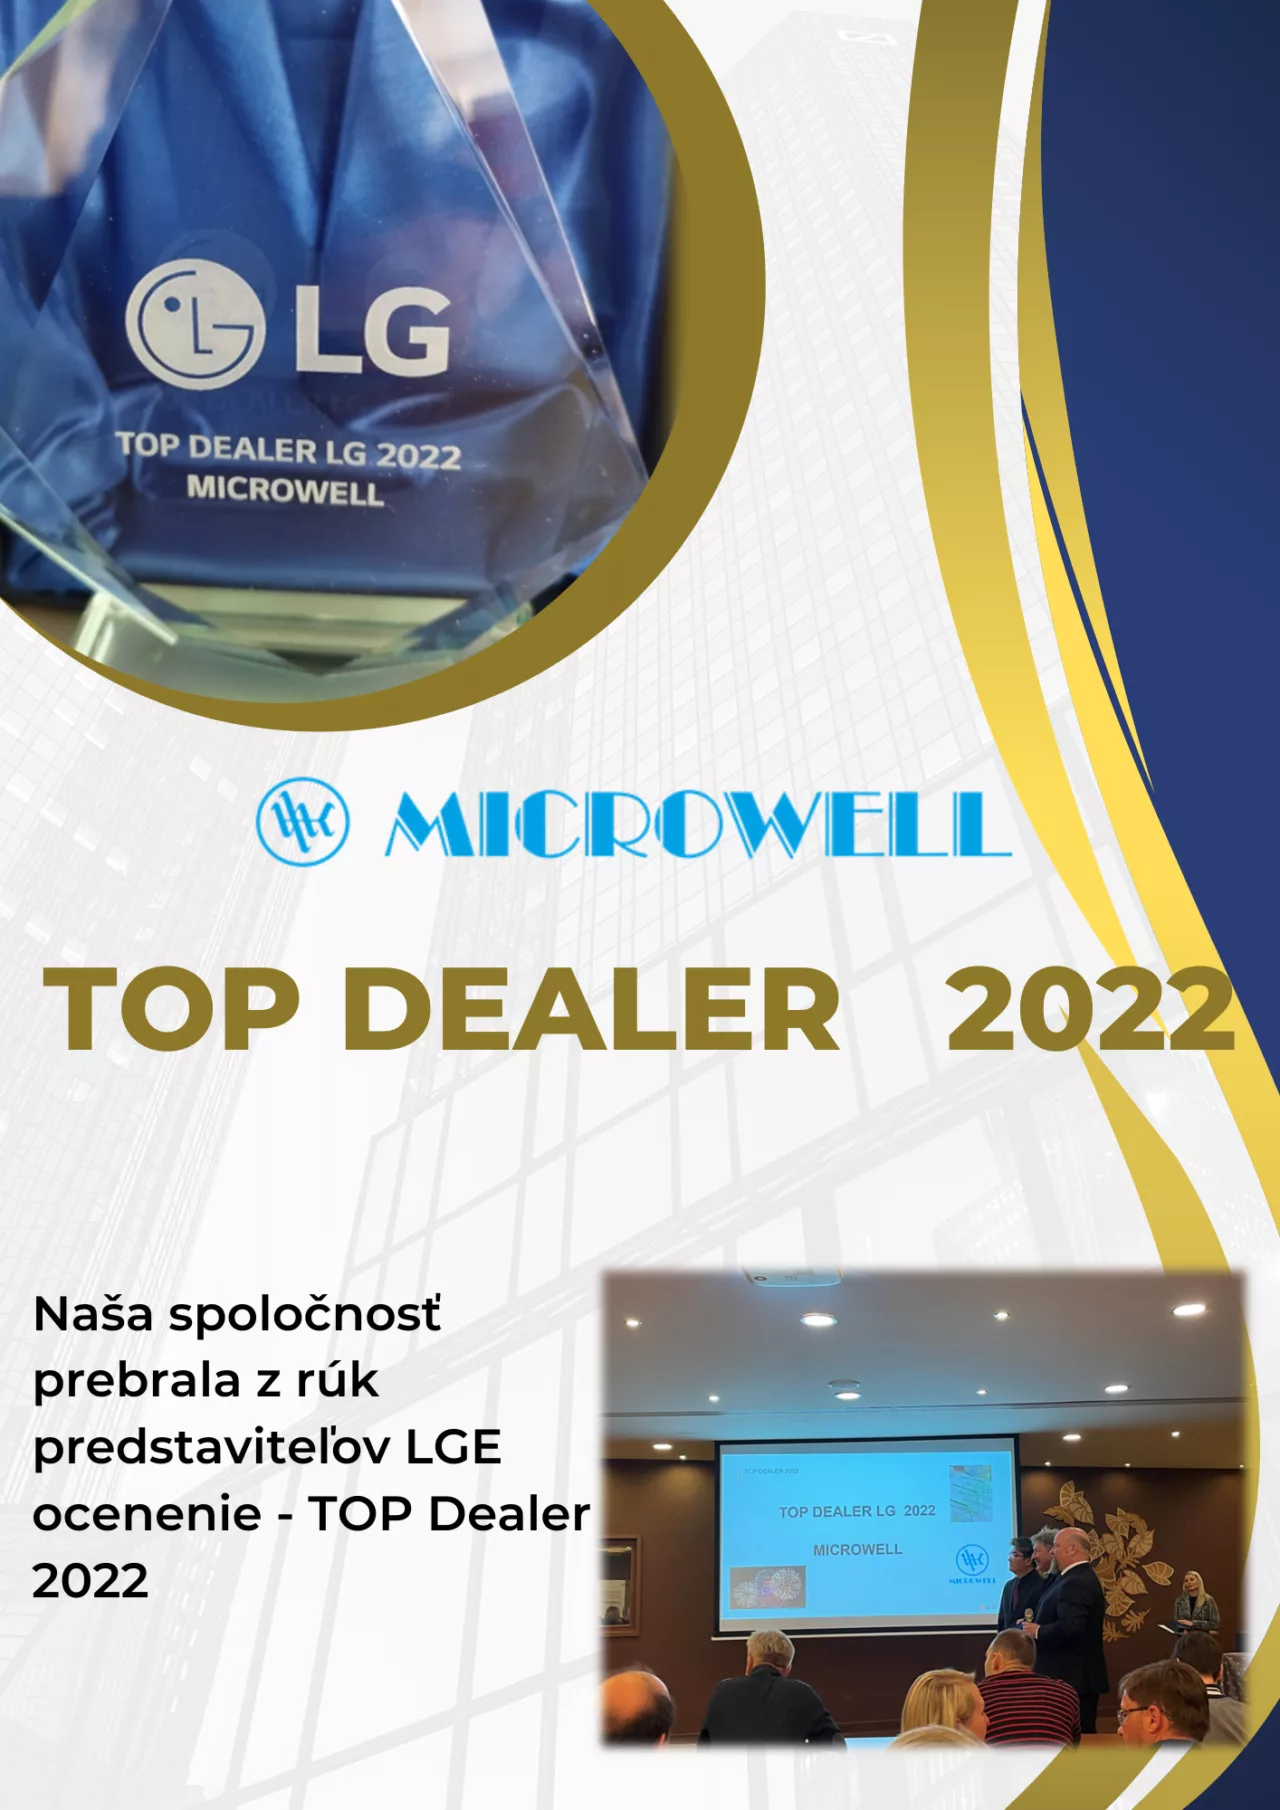 LG TOP DEALER 2022